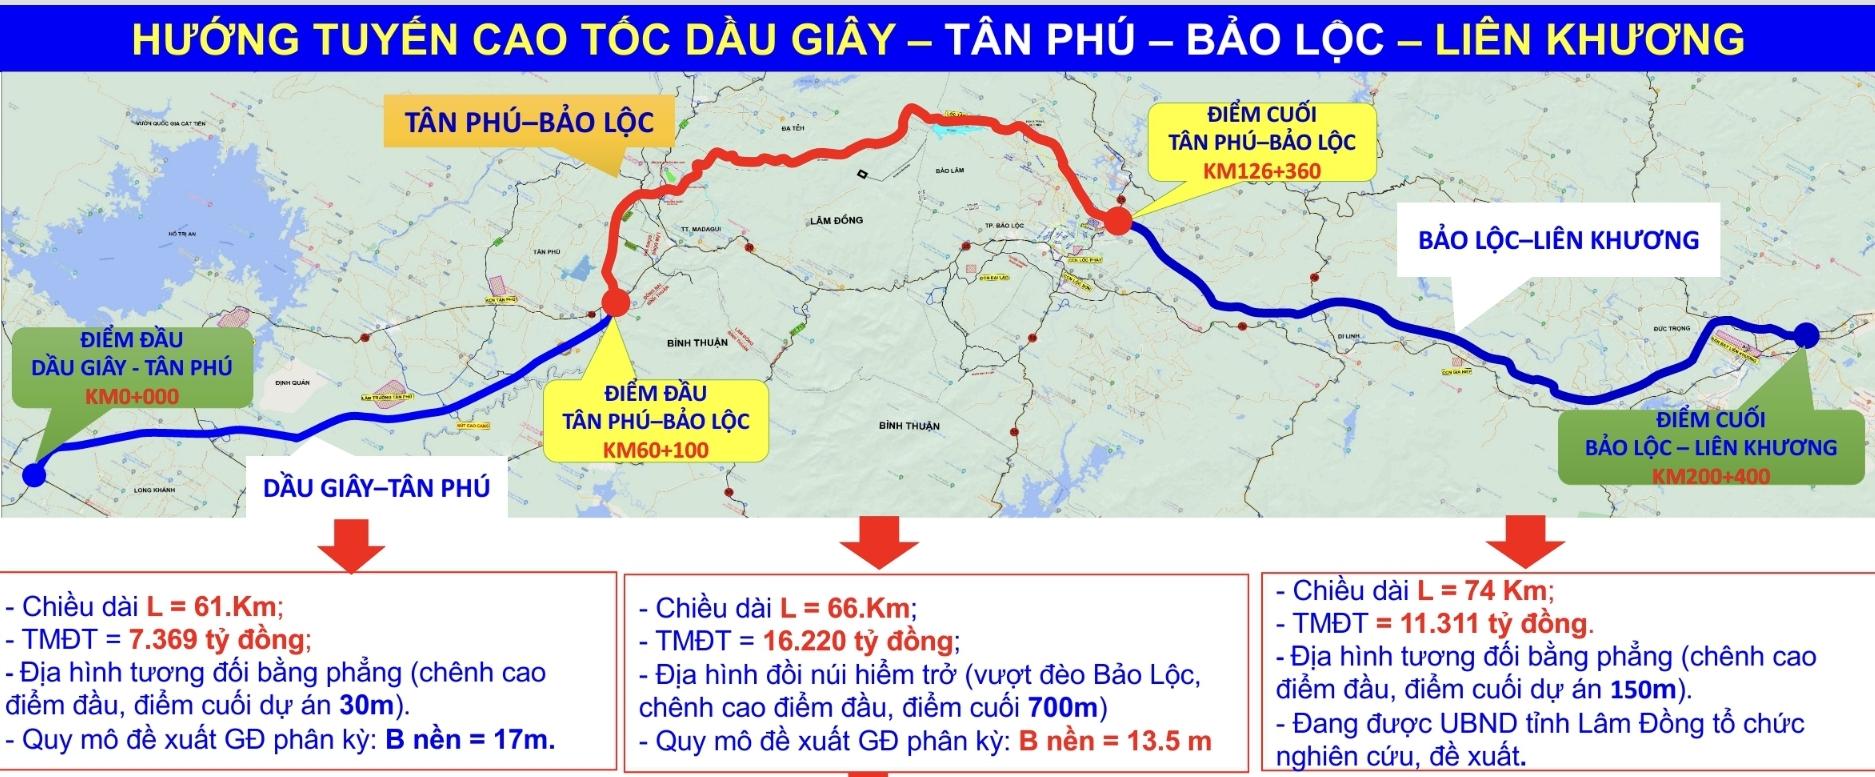 Tuyến cao tốc Dầu Giây - Tân Phú - Bảo Lộc - Liên Khương